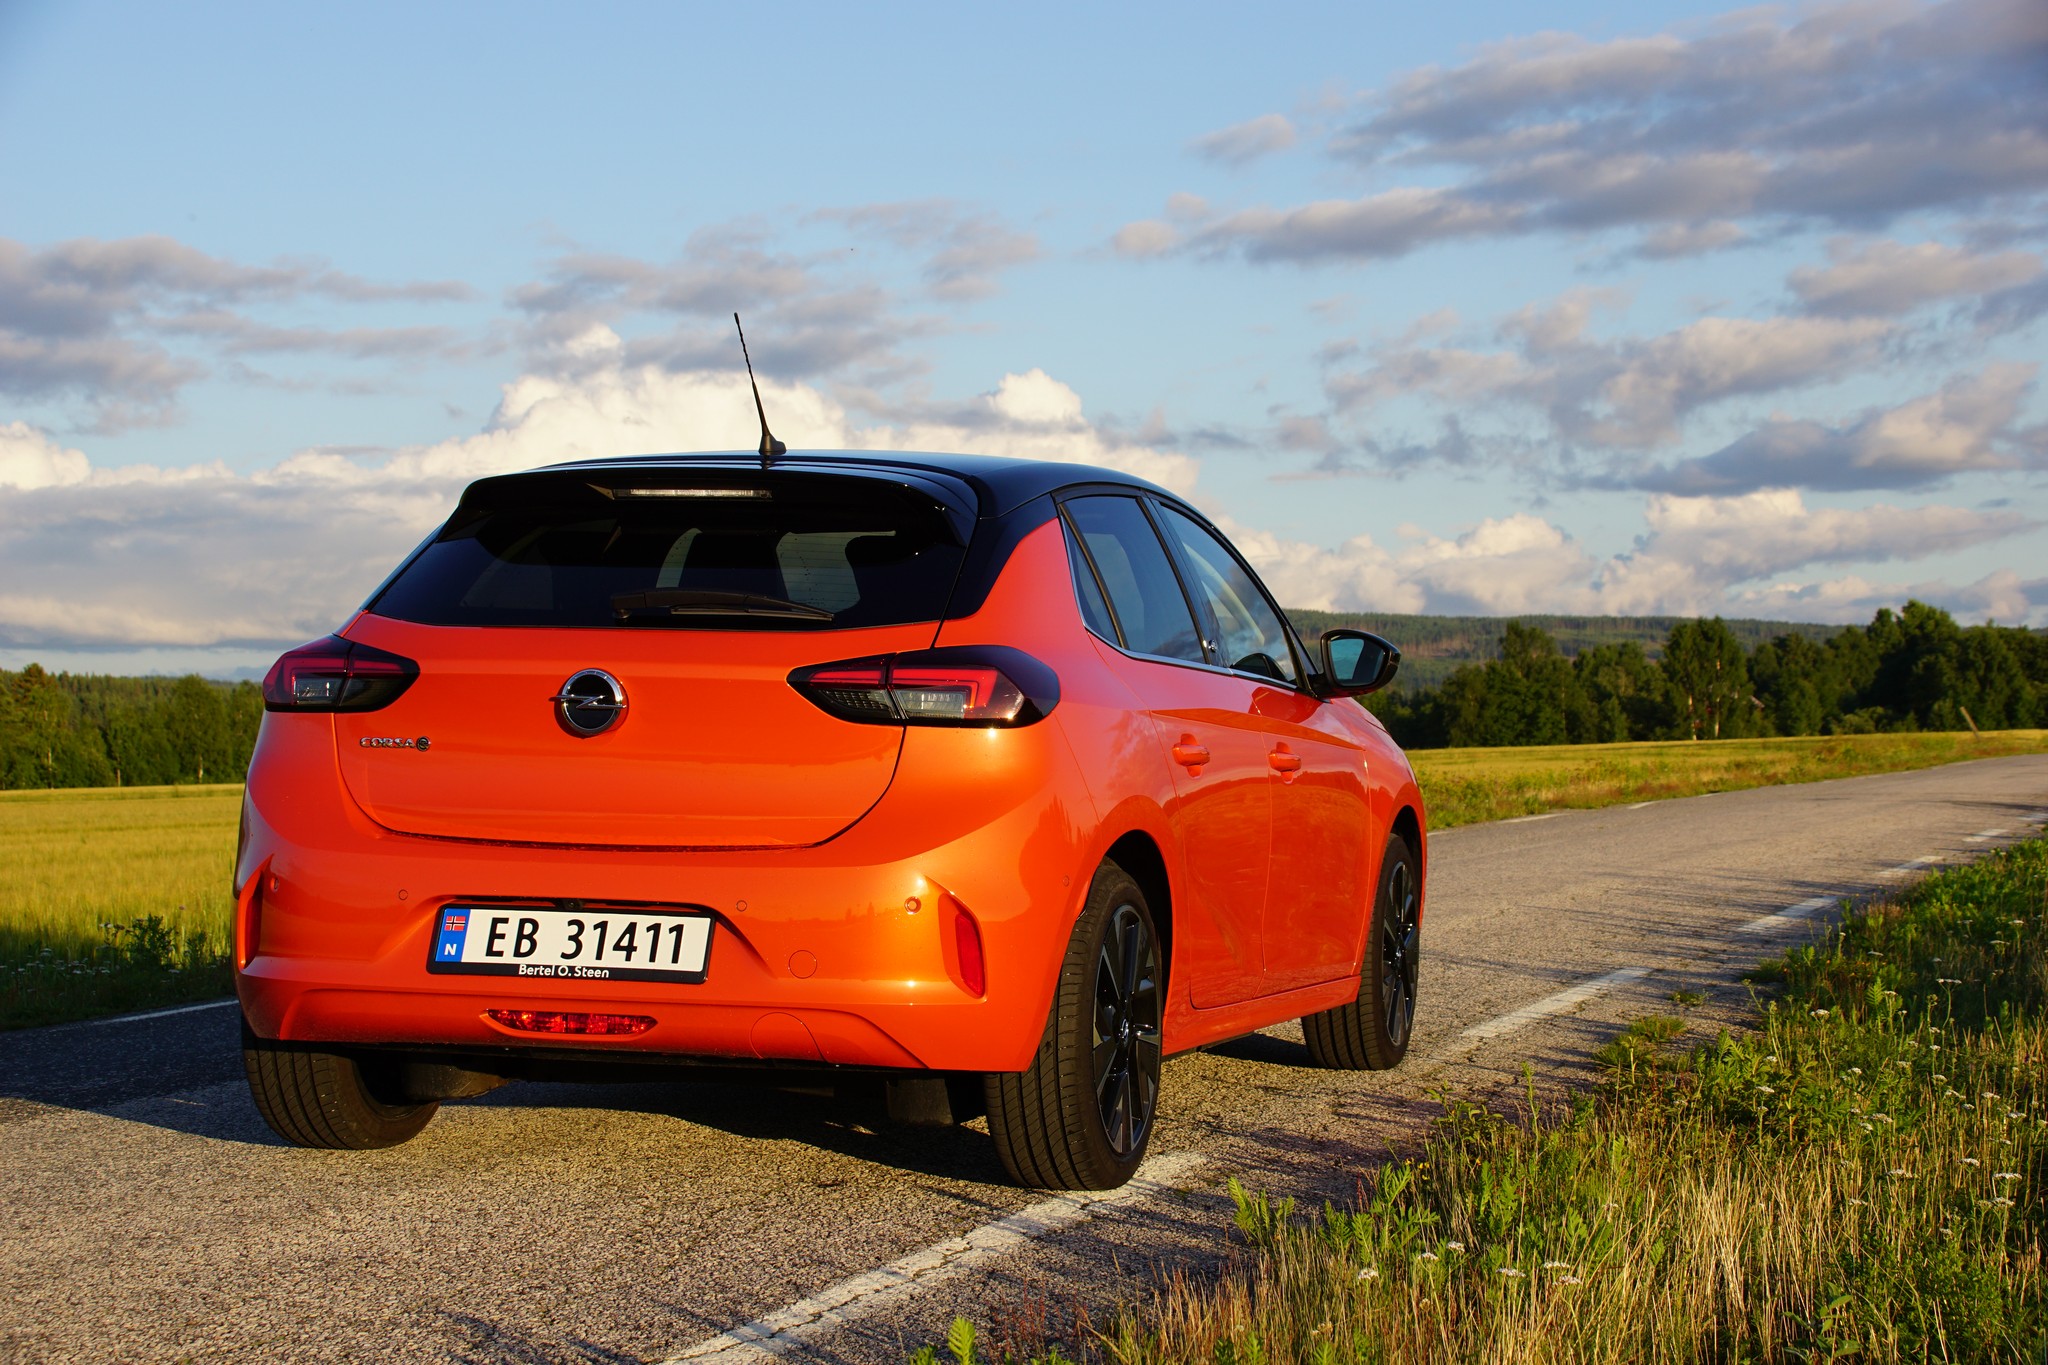 Opel Corsa-e - pris, rekkevidde og tester